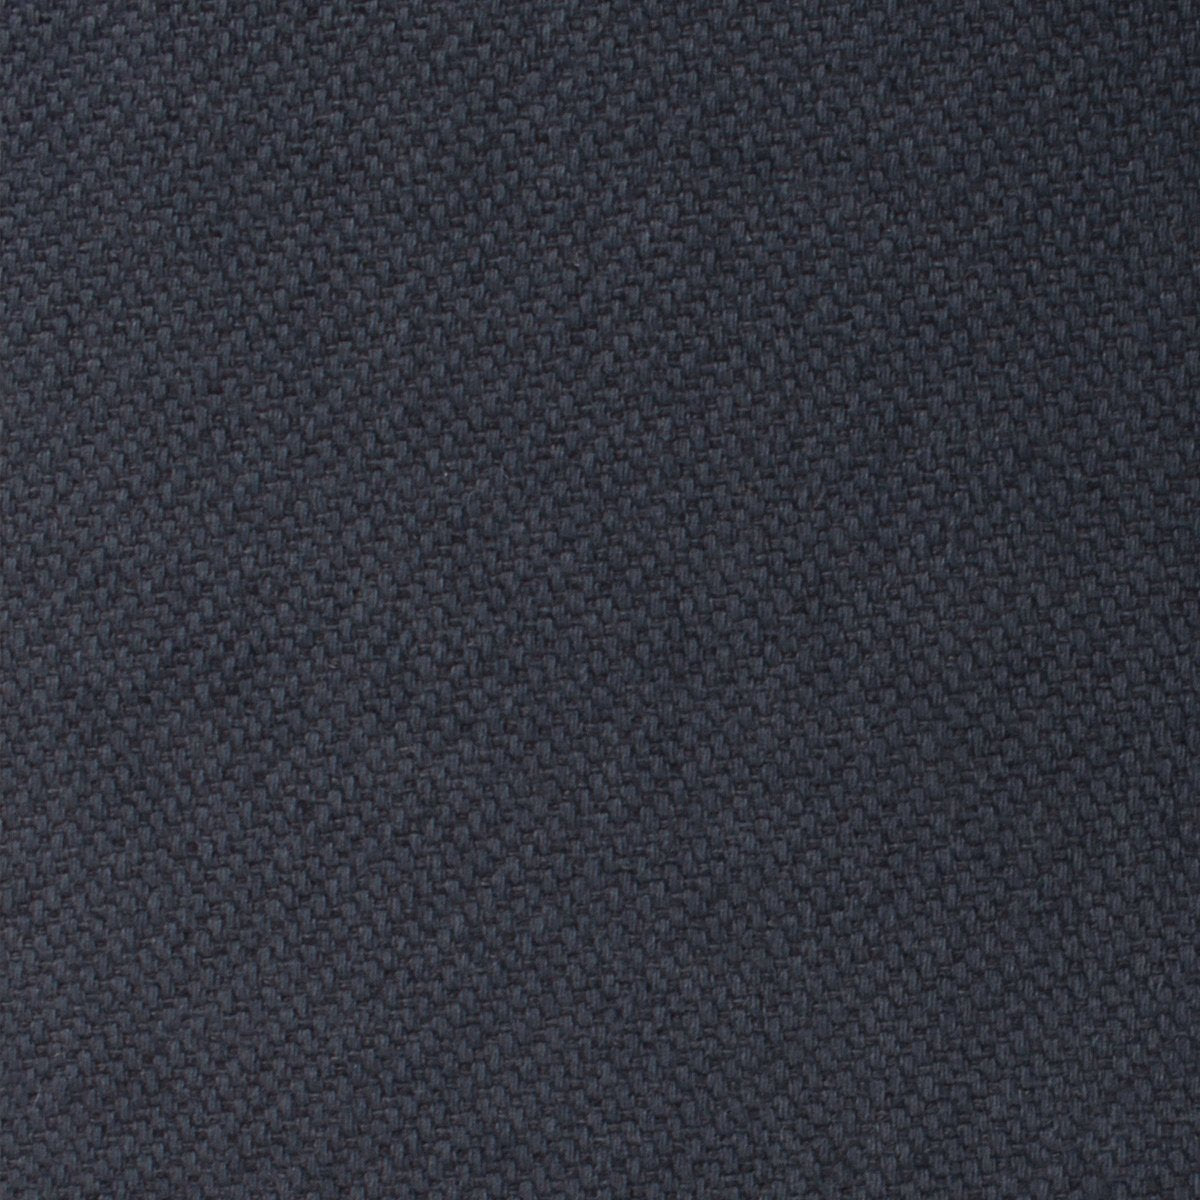 Öland Navy Blue Linen Skinny Tie Fabric